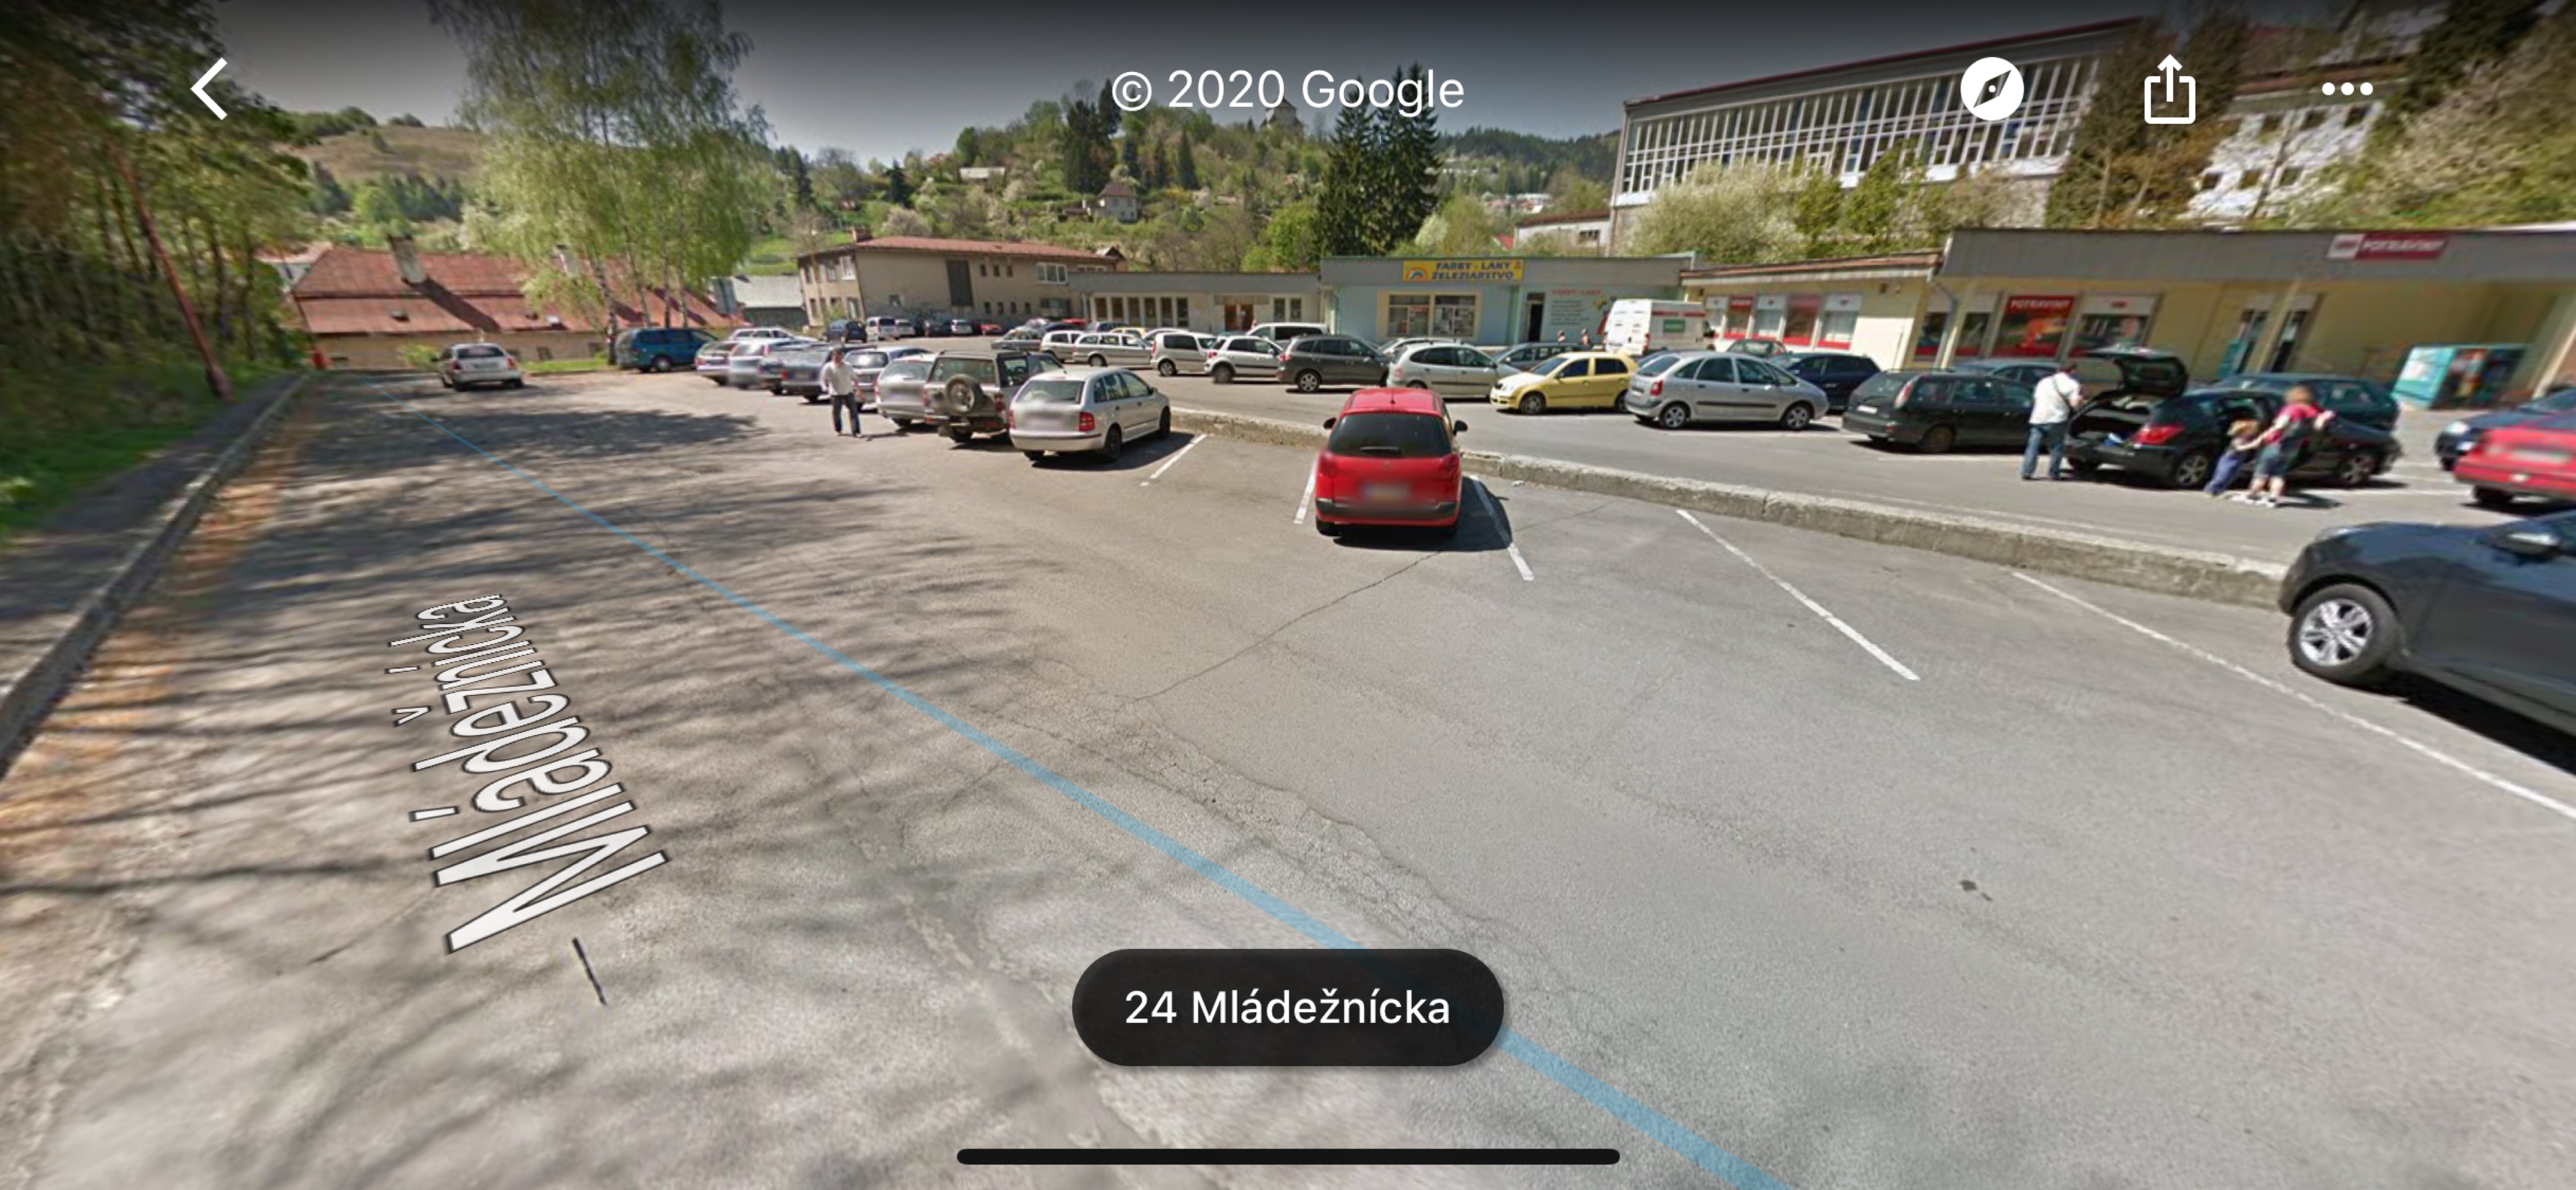 Neobmedzene parkovanie v centre zadarmo - Banska Stiavnica City Center